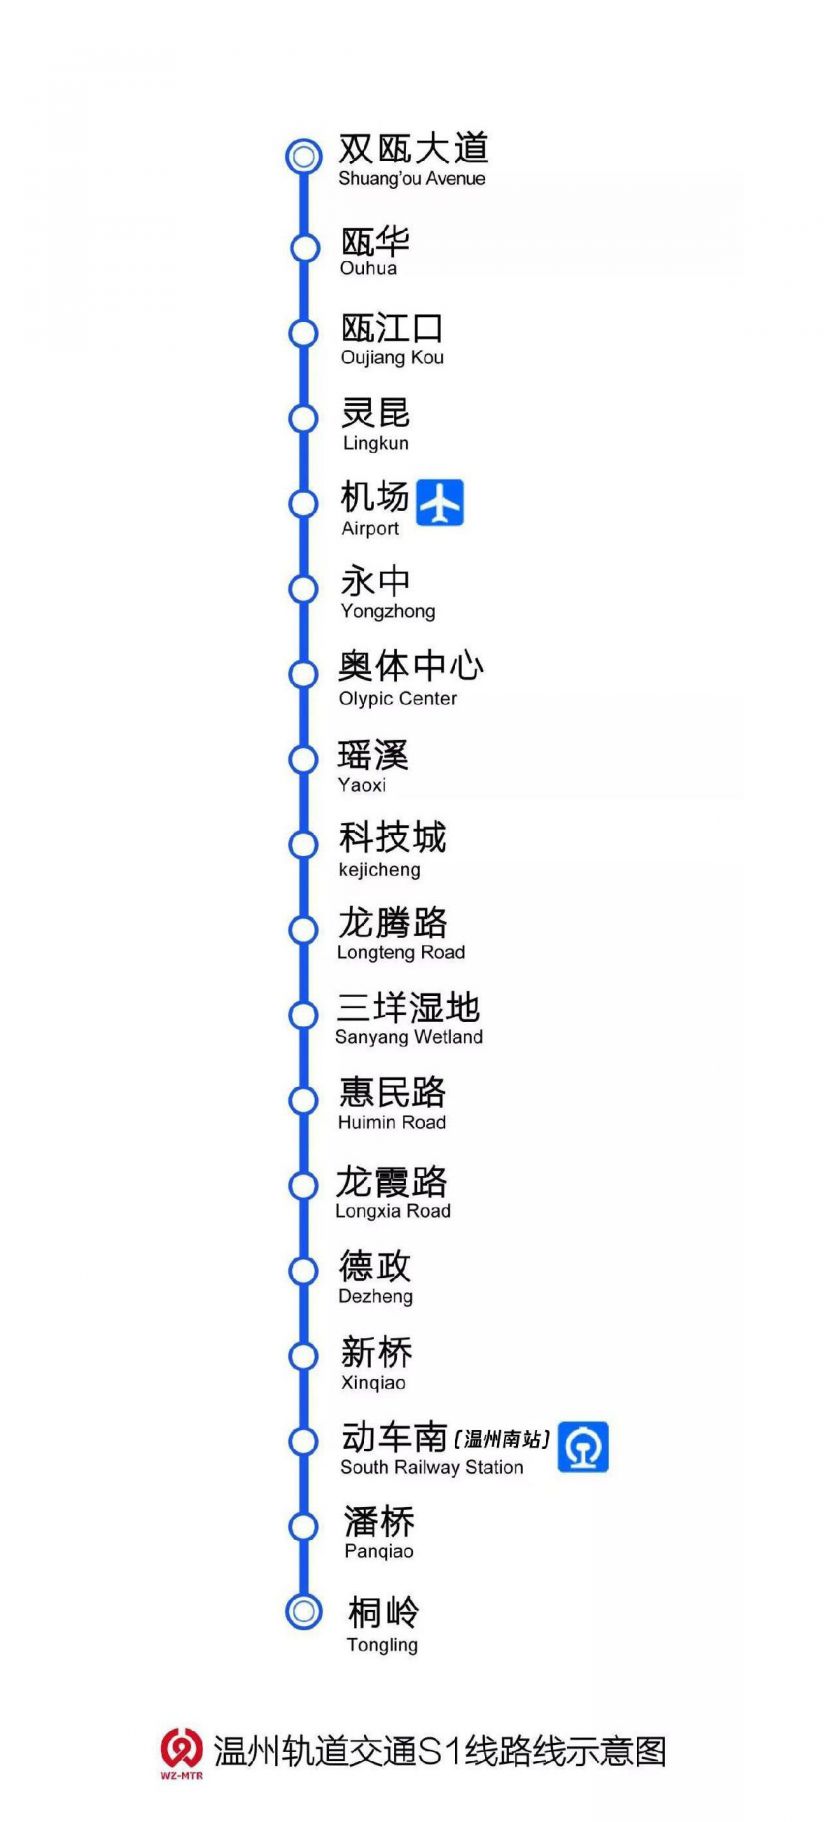 温州地铁s1号线站点信息双瓯大道 — 瓯华 — 瓯江口 — 灵昆 — 机场